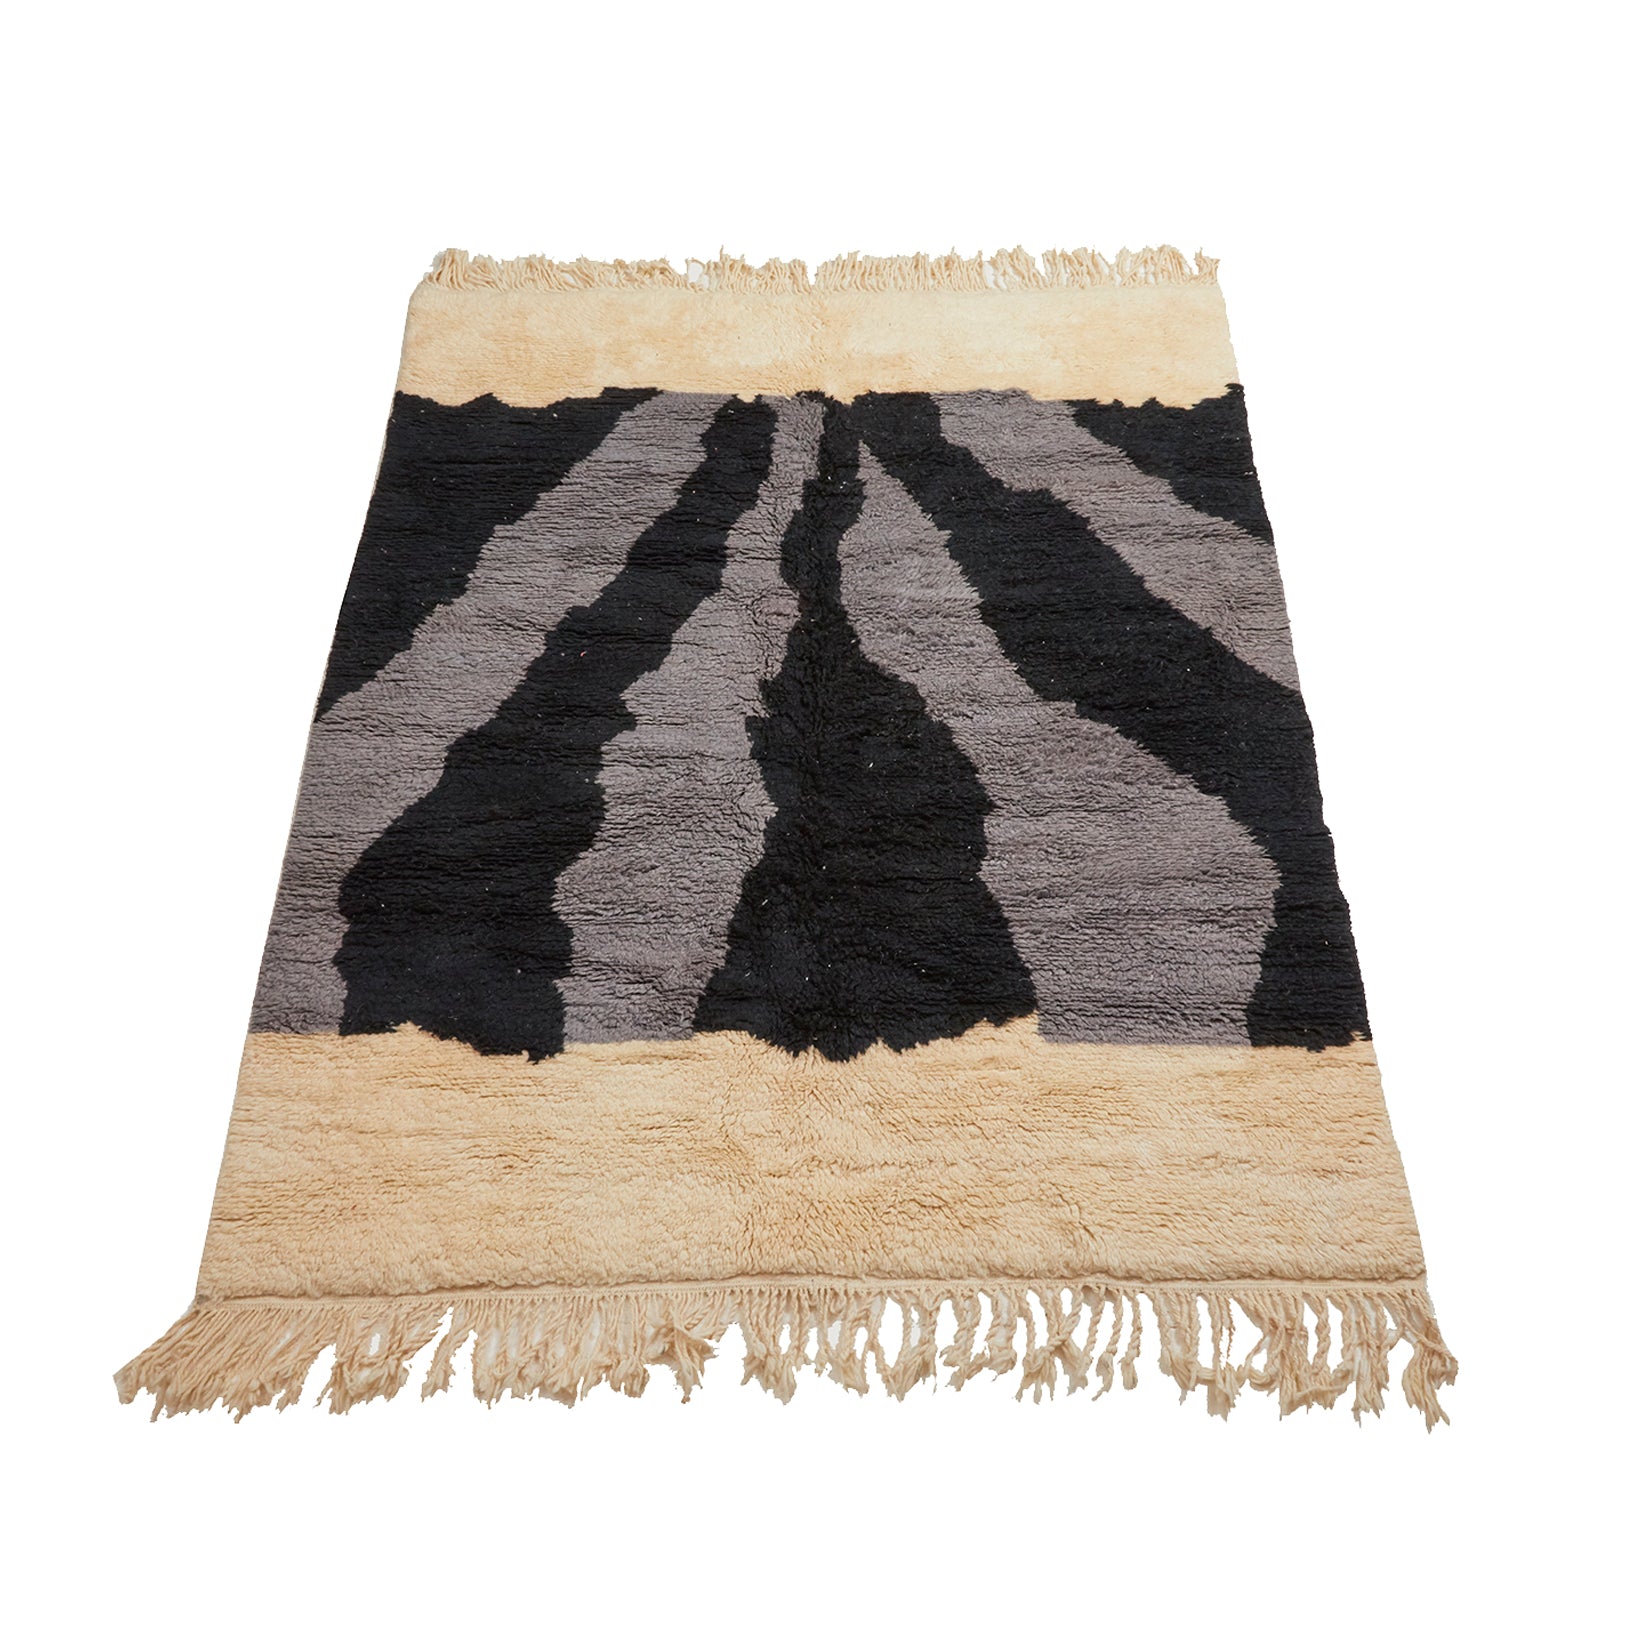 Unique Moroccan berber area rug with wavy, abstract design - Kantara | Moroccan Rugs